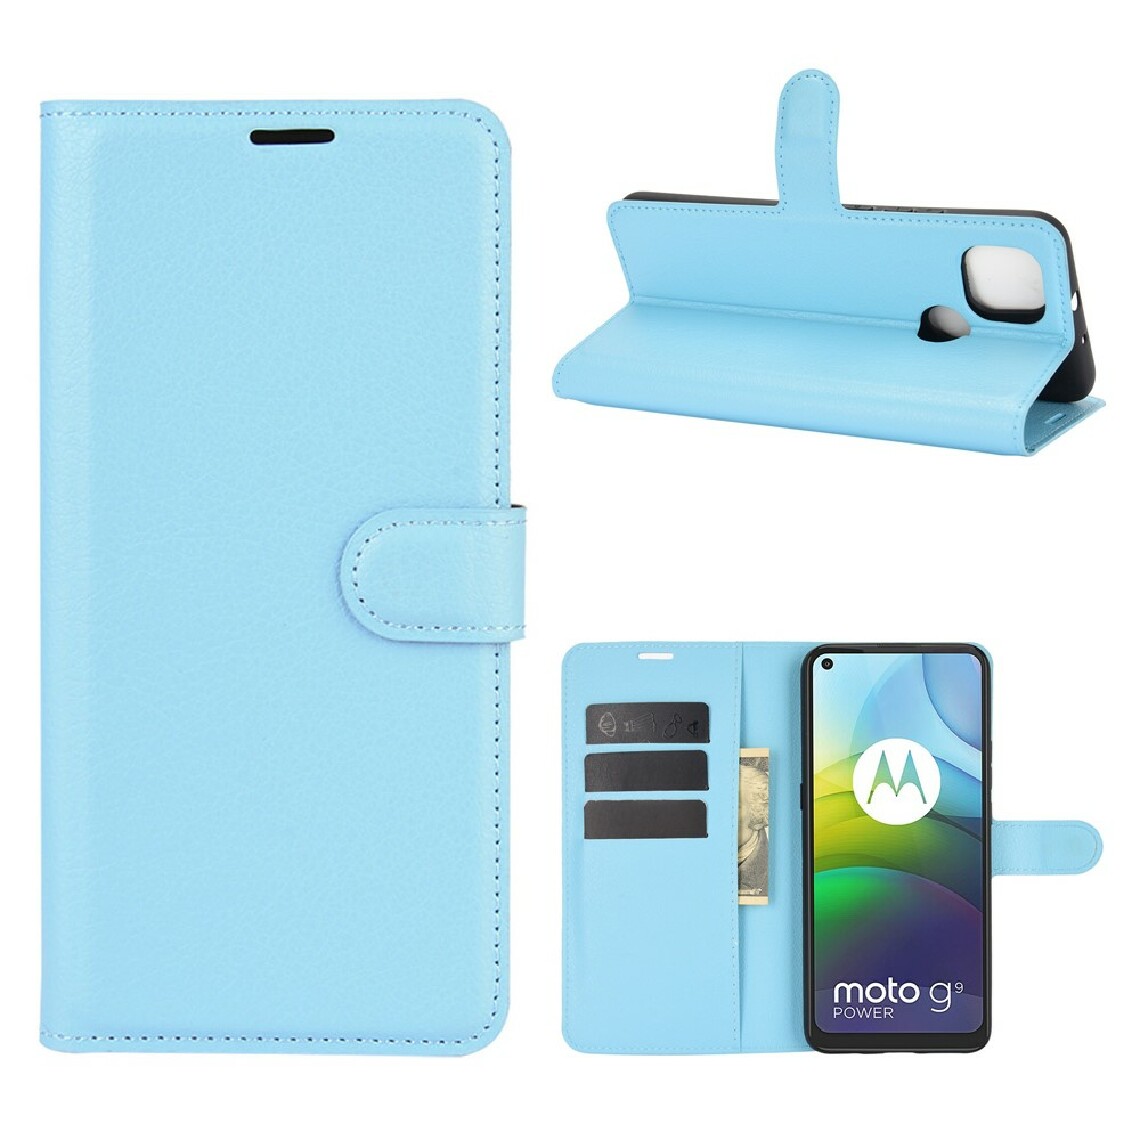 Other - Etui en PU texture de litchi bleu pour votre Motorola Moto G9 Power - Coque, étui smartphone